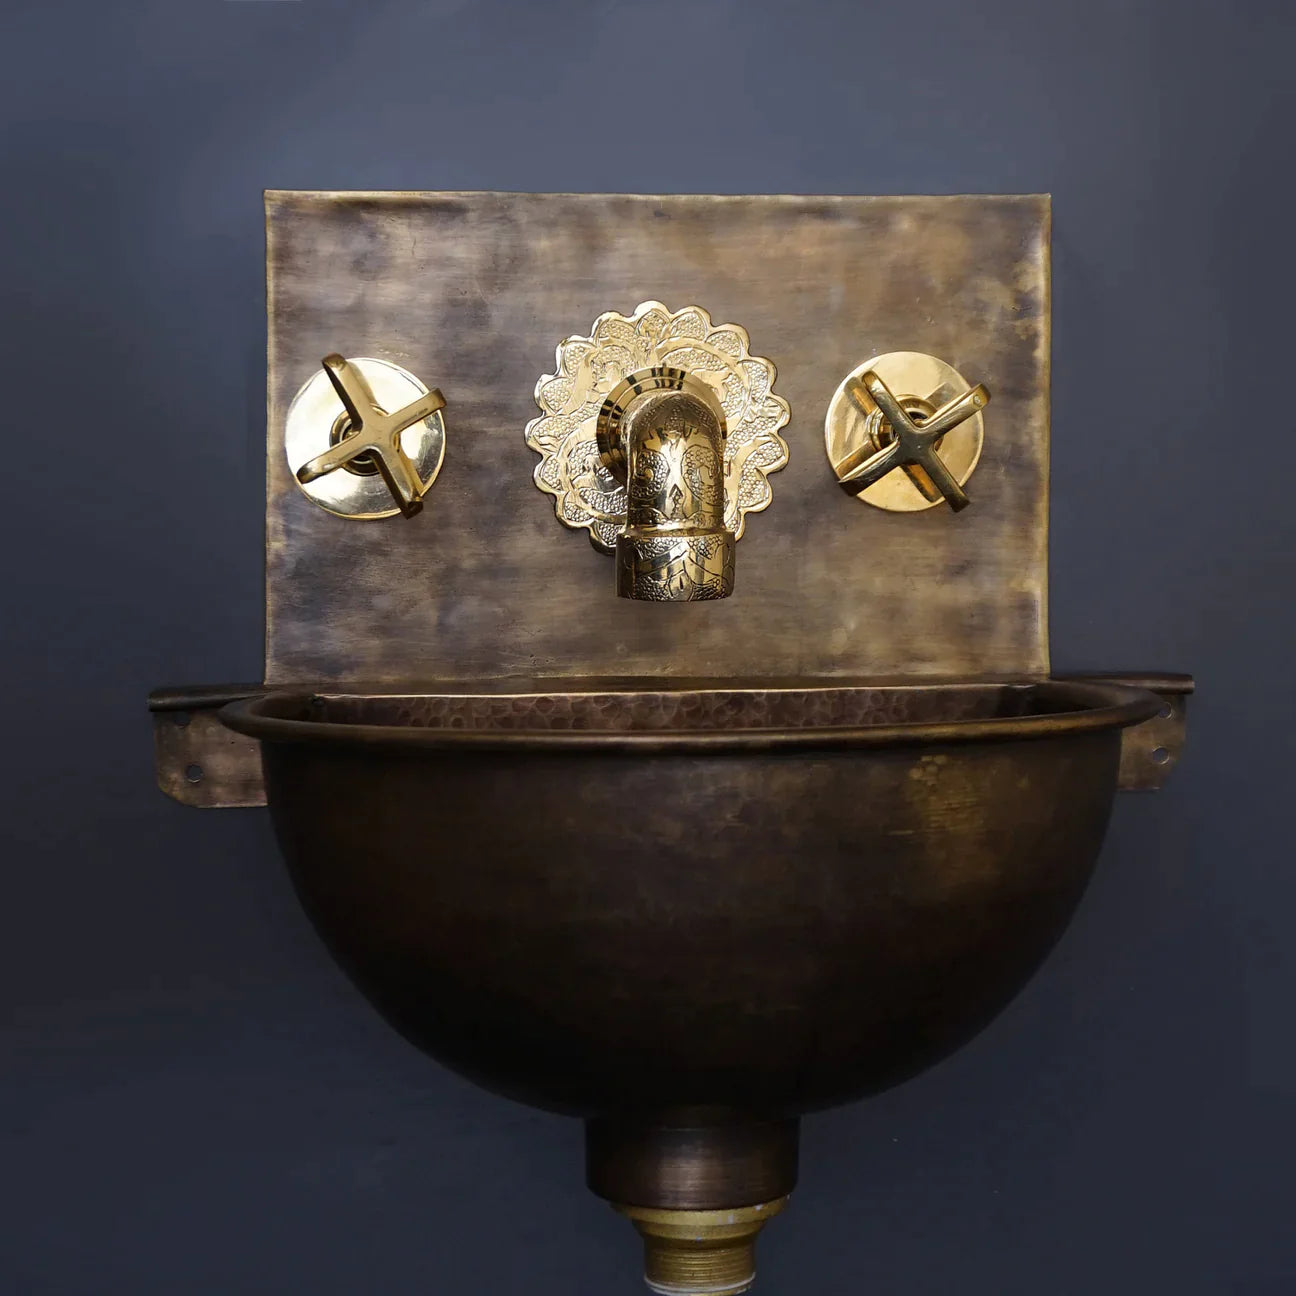 Copper Mounted Sinks | Wall Mounted Sinks | Zayian